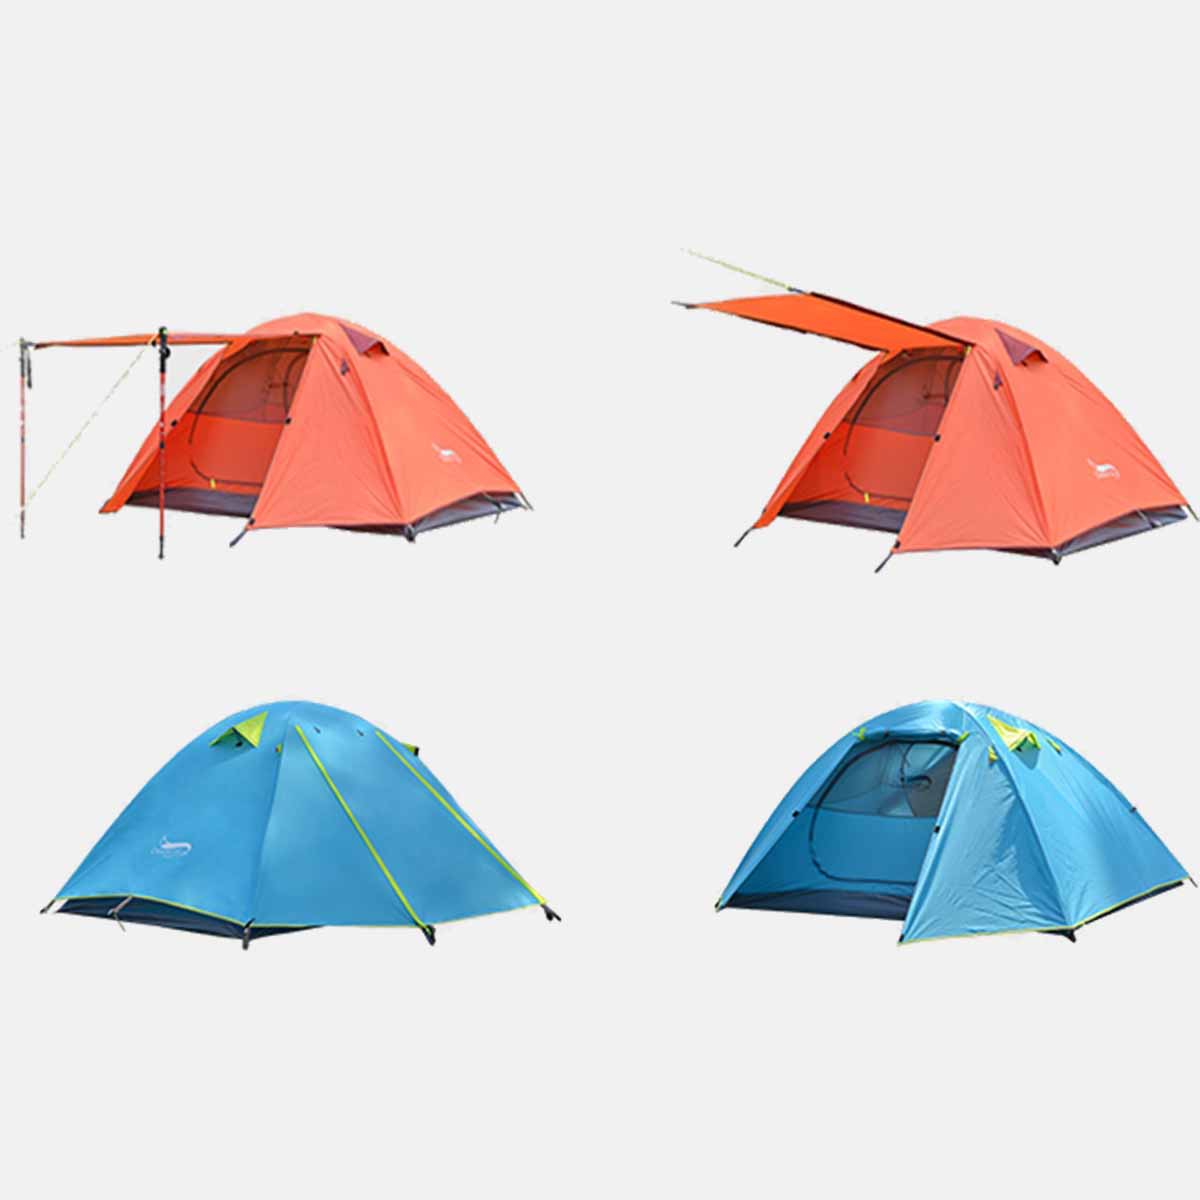 Desert&Fox 2 Person Waterproof Tent Double Layer Outdoor